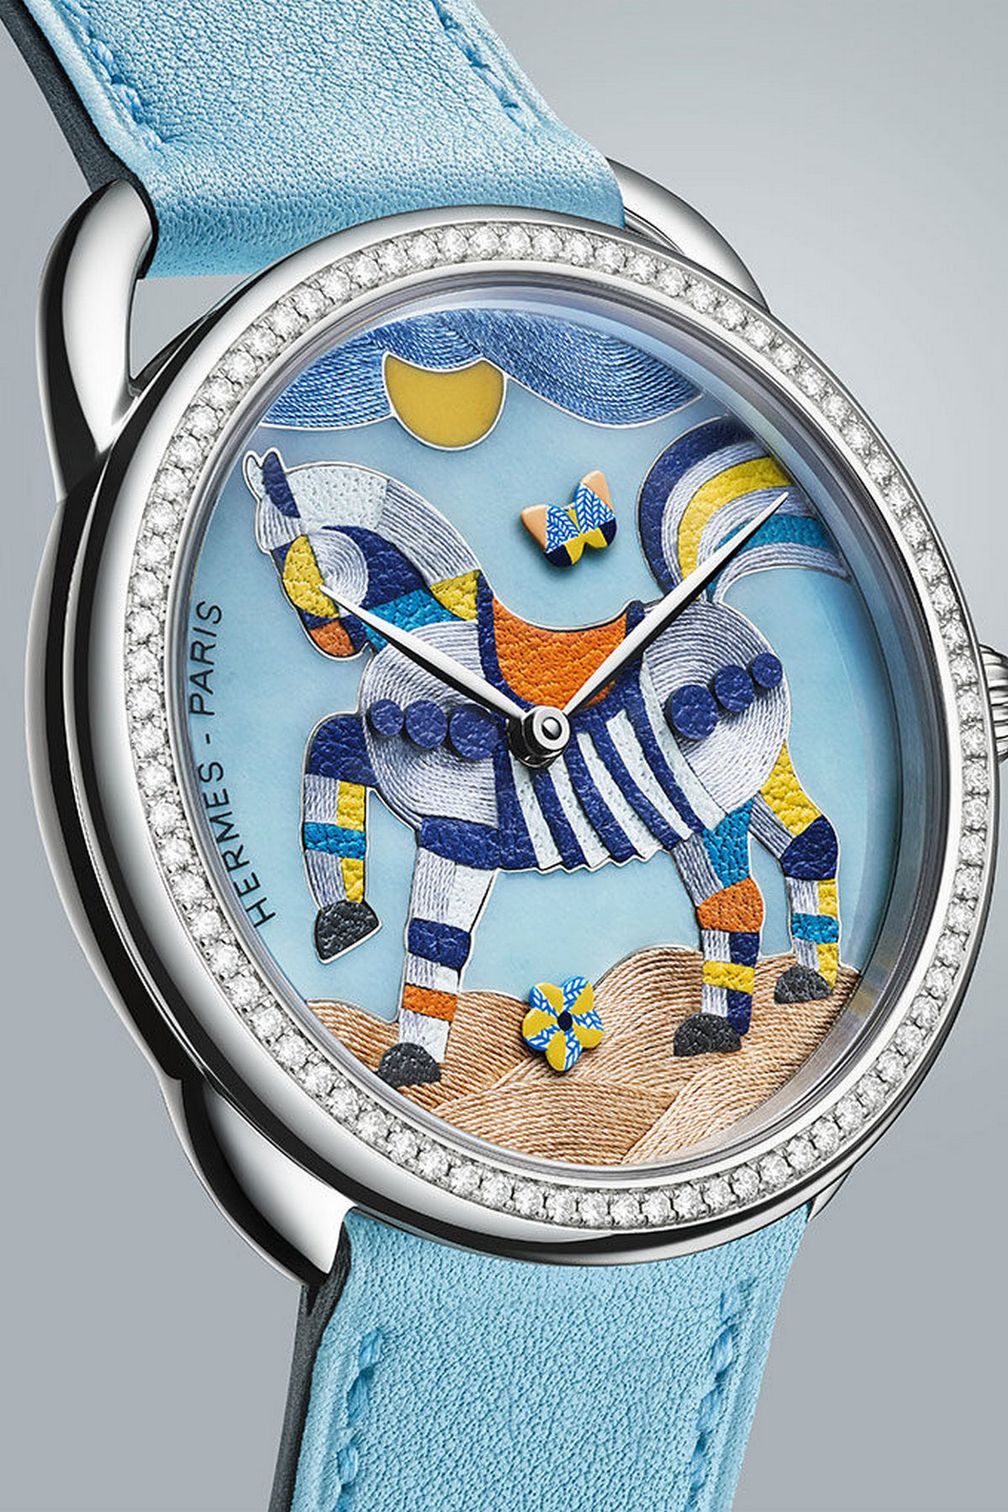 Ремешок Swift из телячьей кожи оттенка голубого зефира, гармонирующего с палитрой циферблата, дополняет очаровательные часы от Hermès